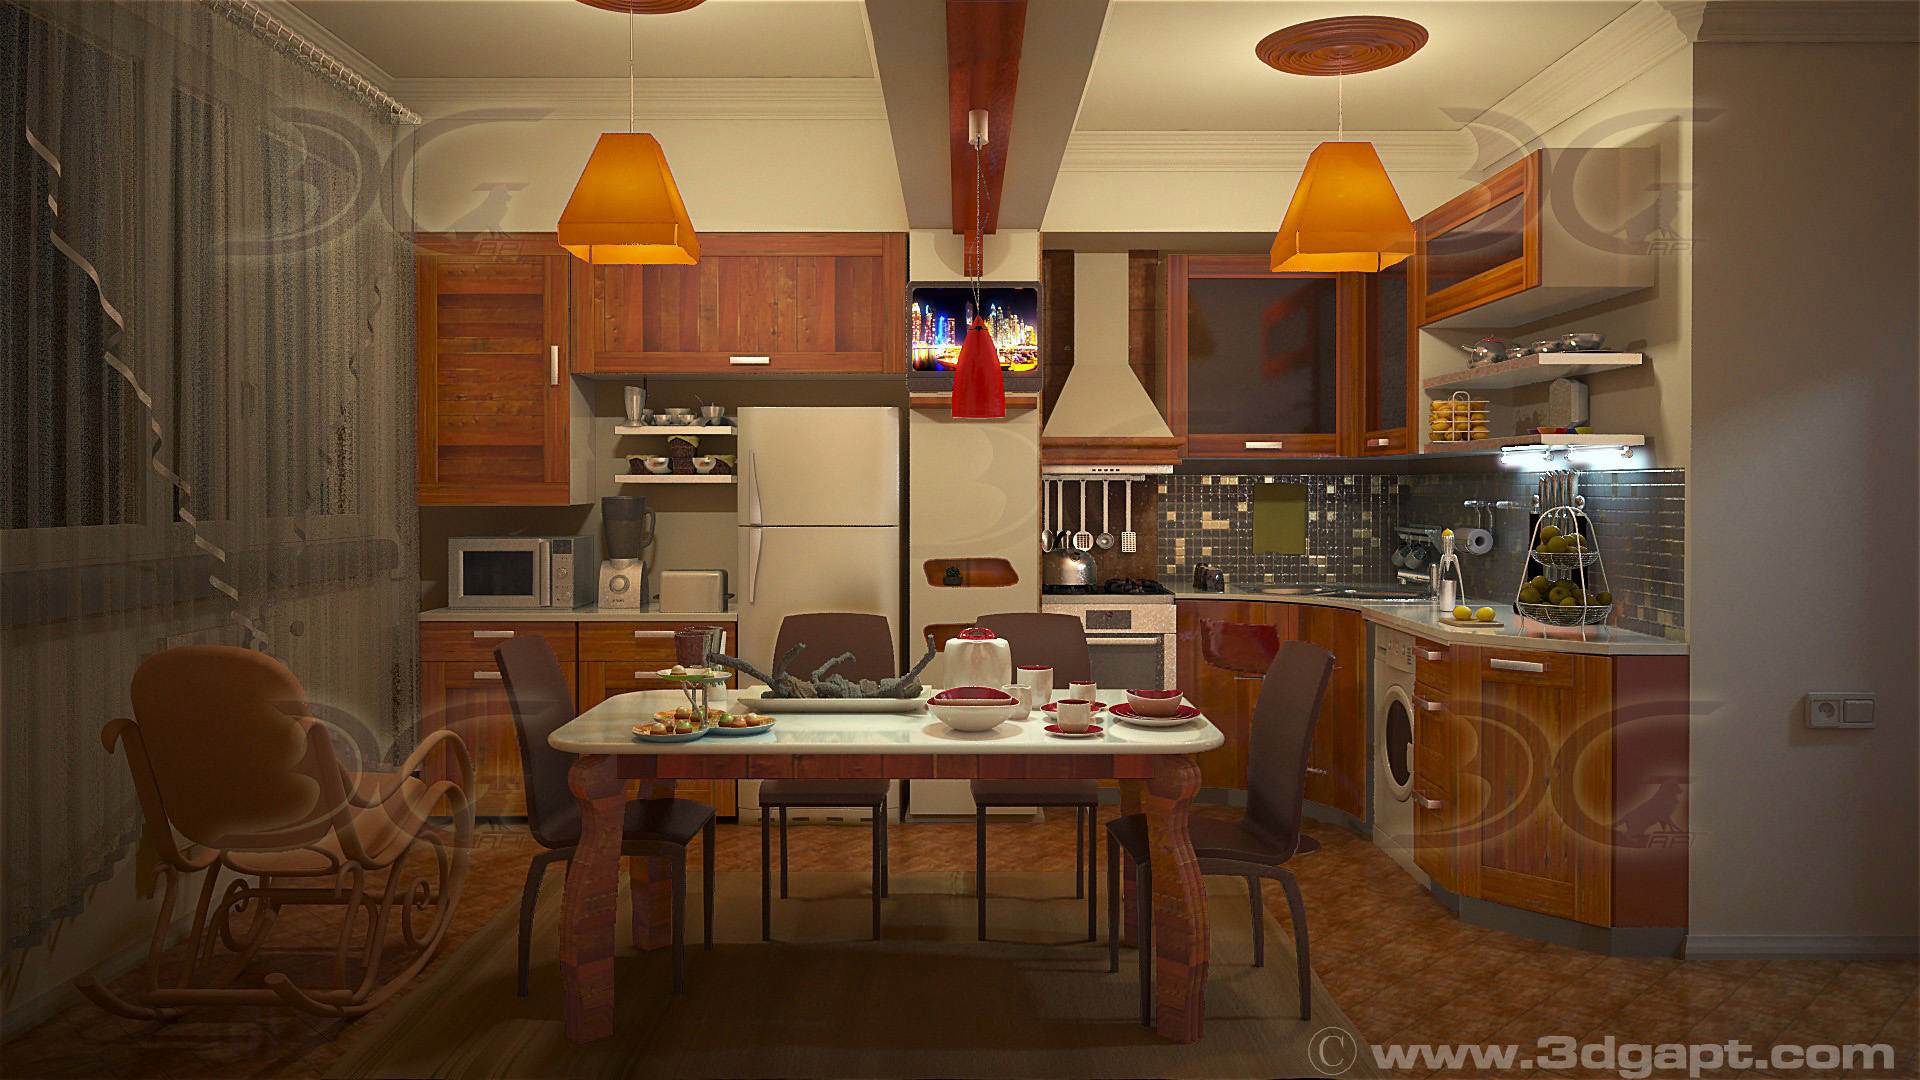 architecture interior kitchen-3versions 25